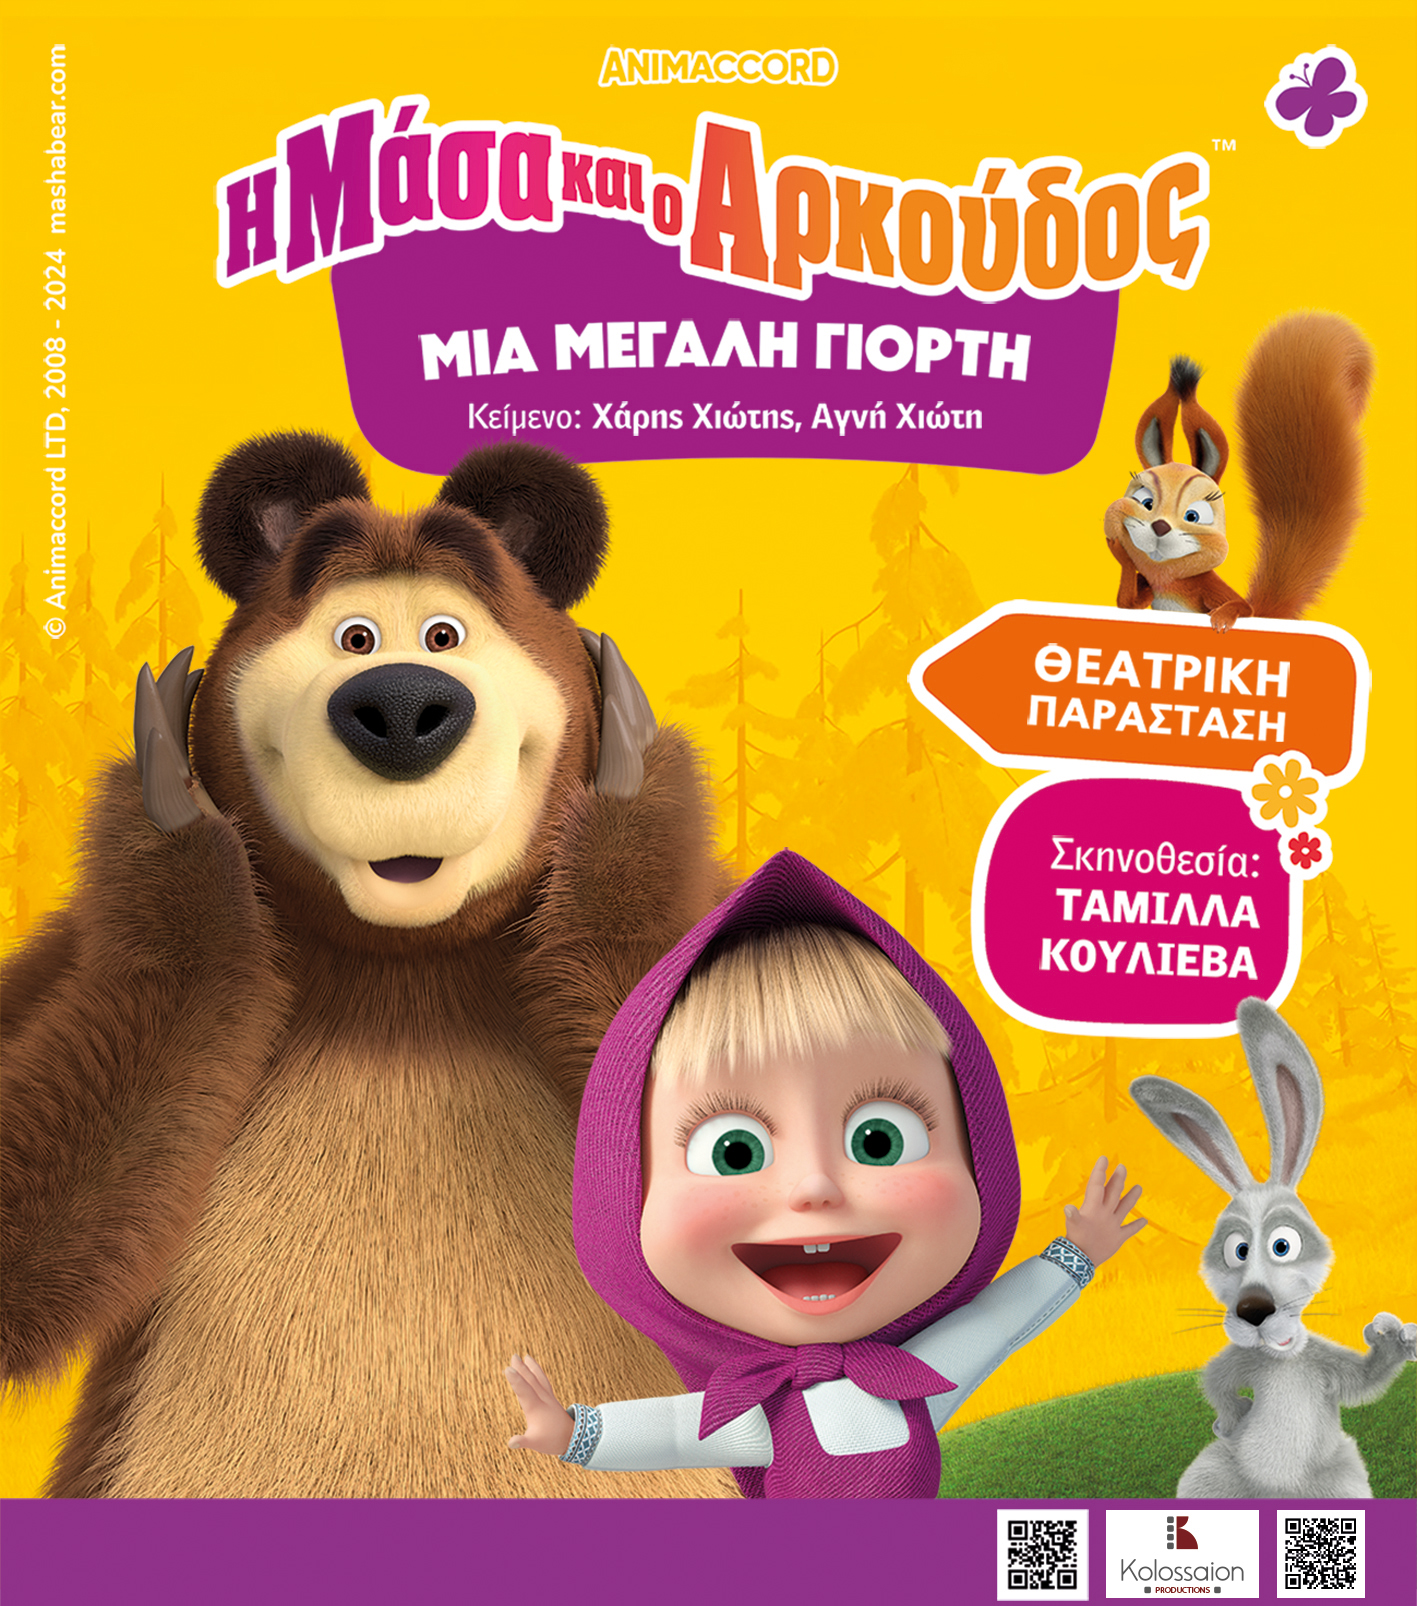 παιδική παράσταση Μάσα και Αρκούδος